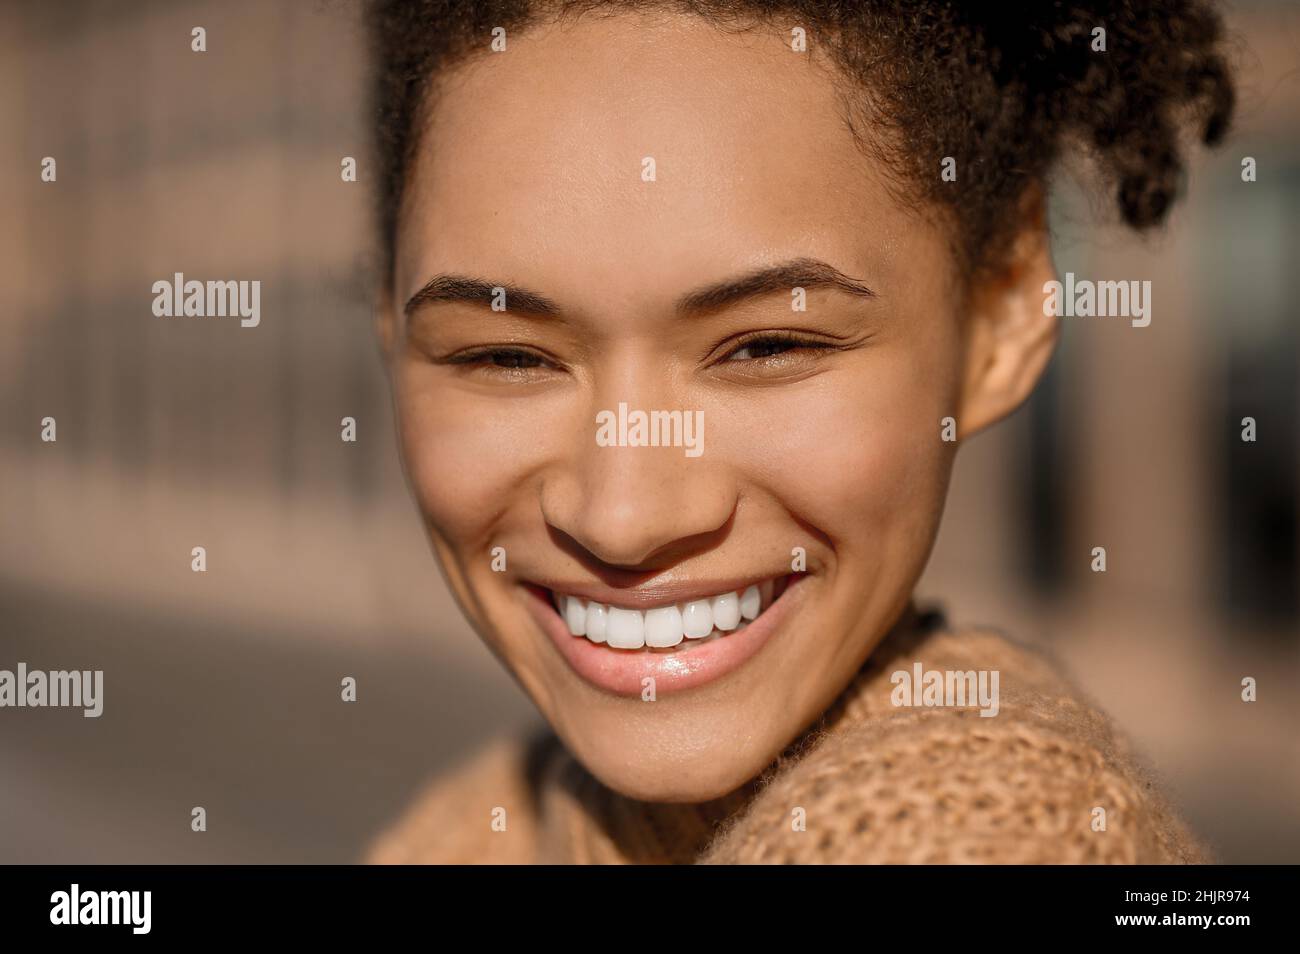 Nahaufnahme des glücklichen Mädchens mit toothy Lächeln Stockfoto